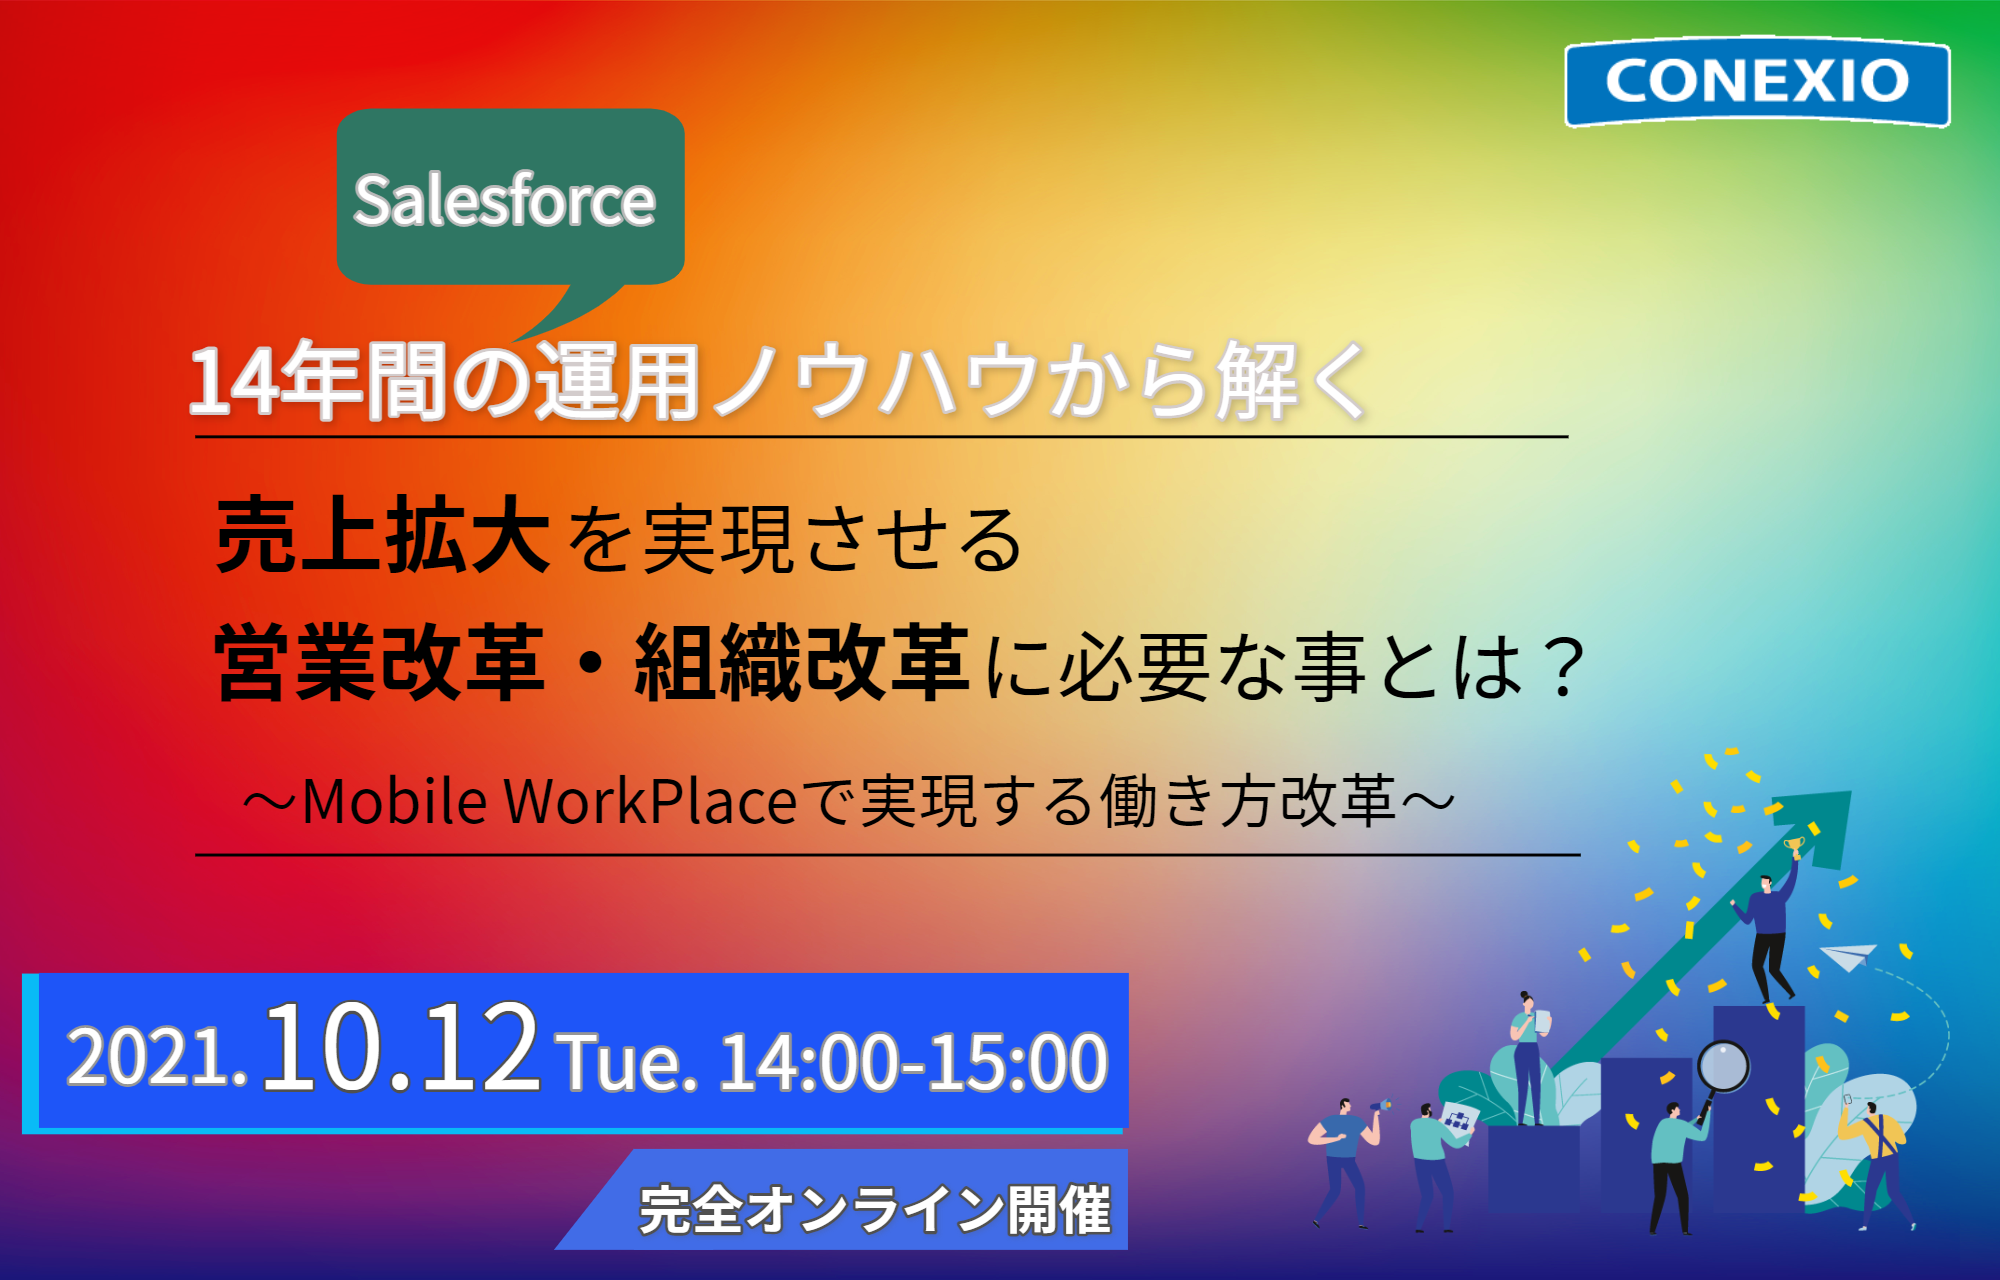 10月12日(火)オンラインセミナー開催 【Salesforce14年間の運用ノウハウから解く！】売上拡大を実現させる営業改革・組織改革に必要な事とは？